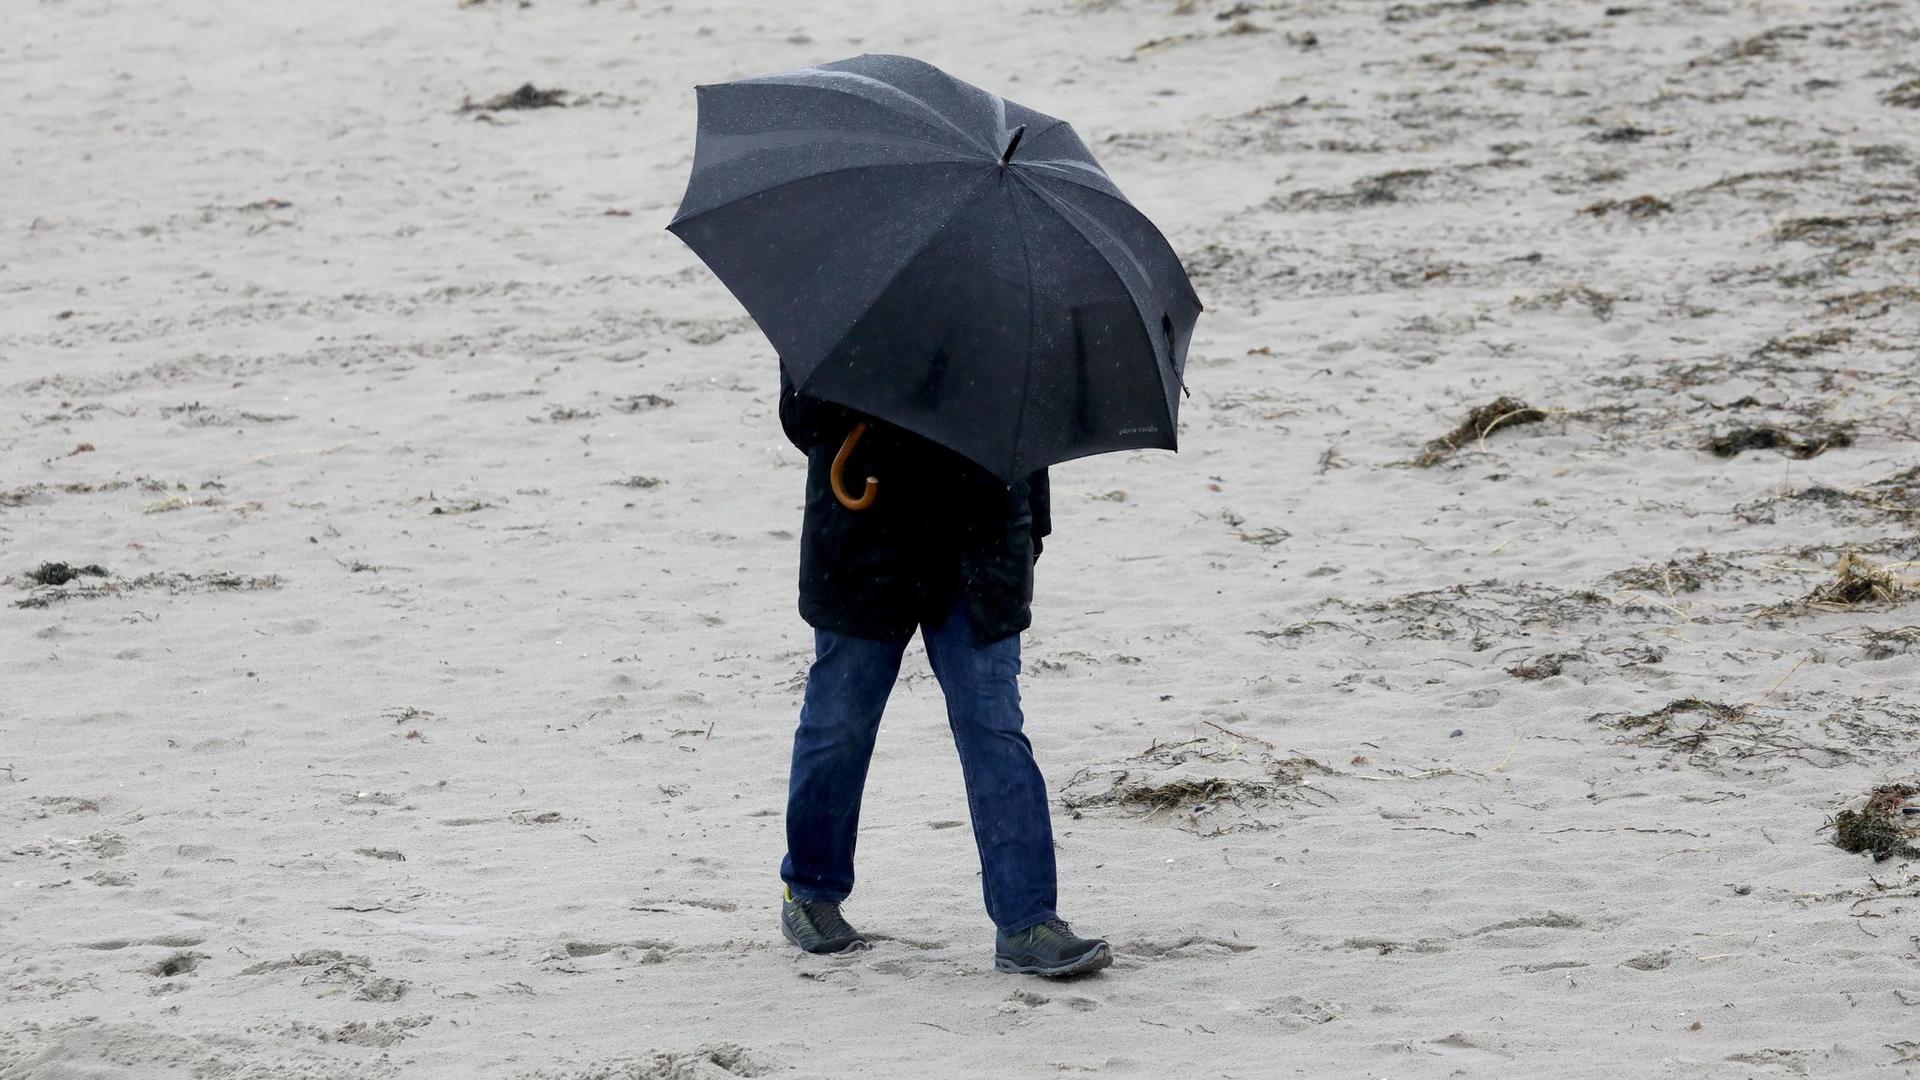 Spaziergänger mit wetterfester Kleidung und Regenschirm am Ostseestrand.